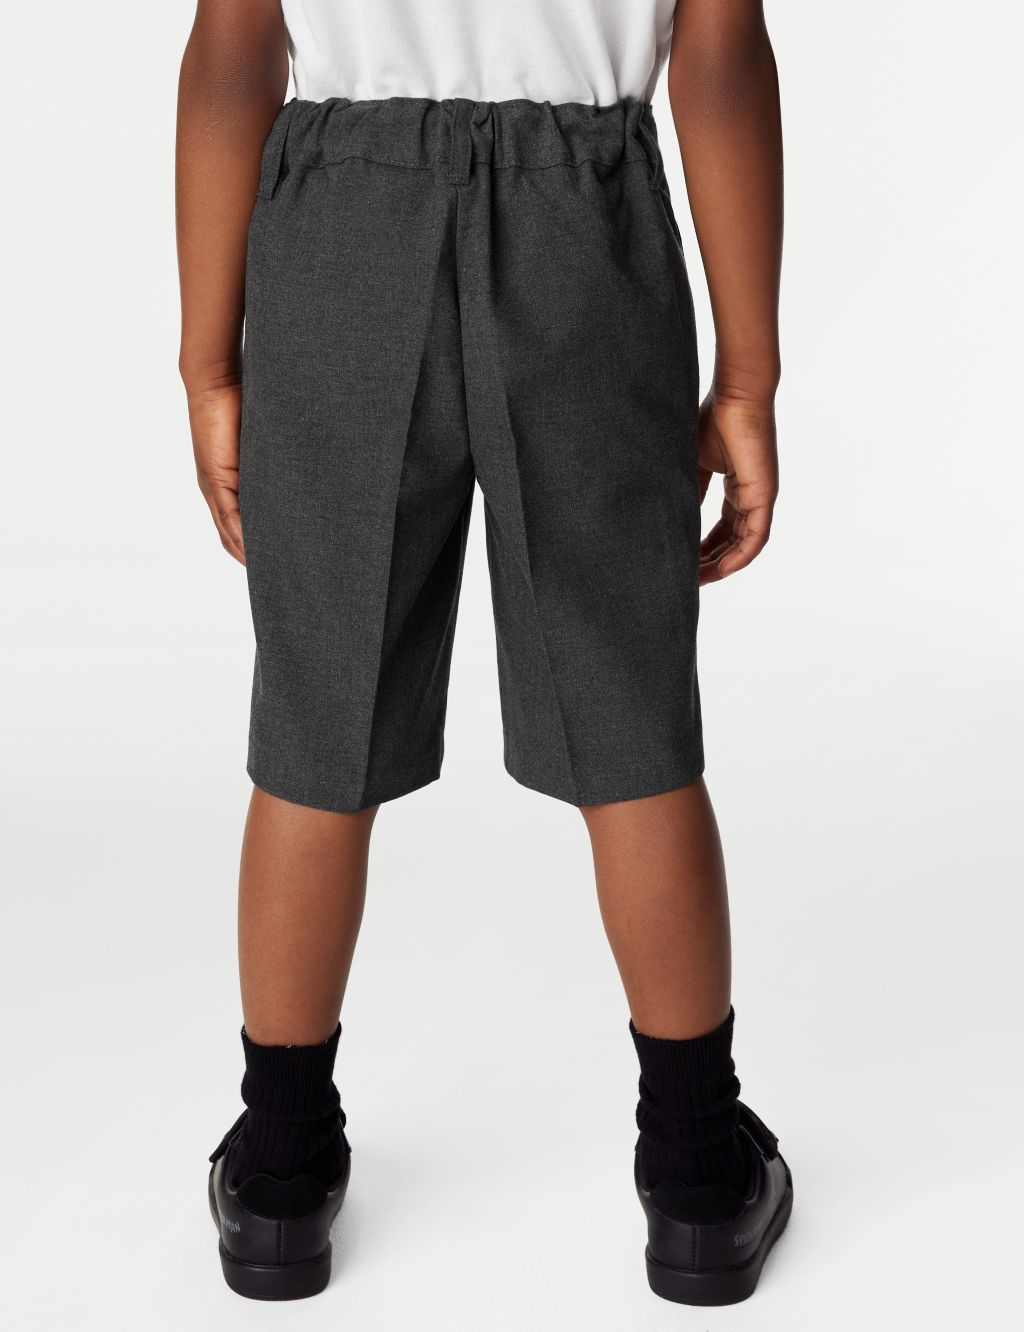 2pk Boys' Slim Leg Plus Waist School Shorts (4-14 Yrs) image 4